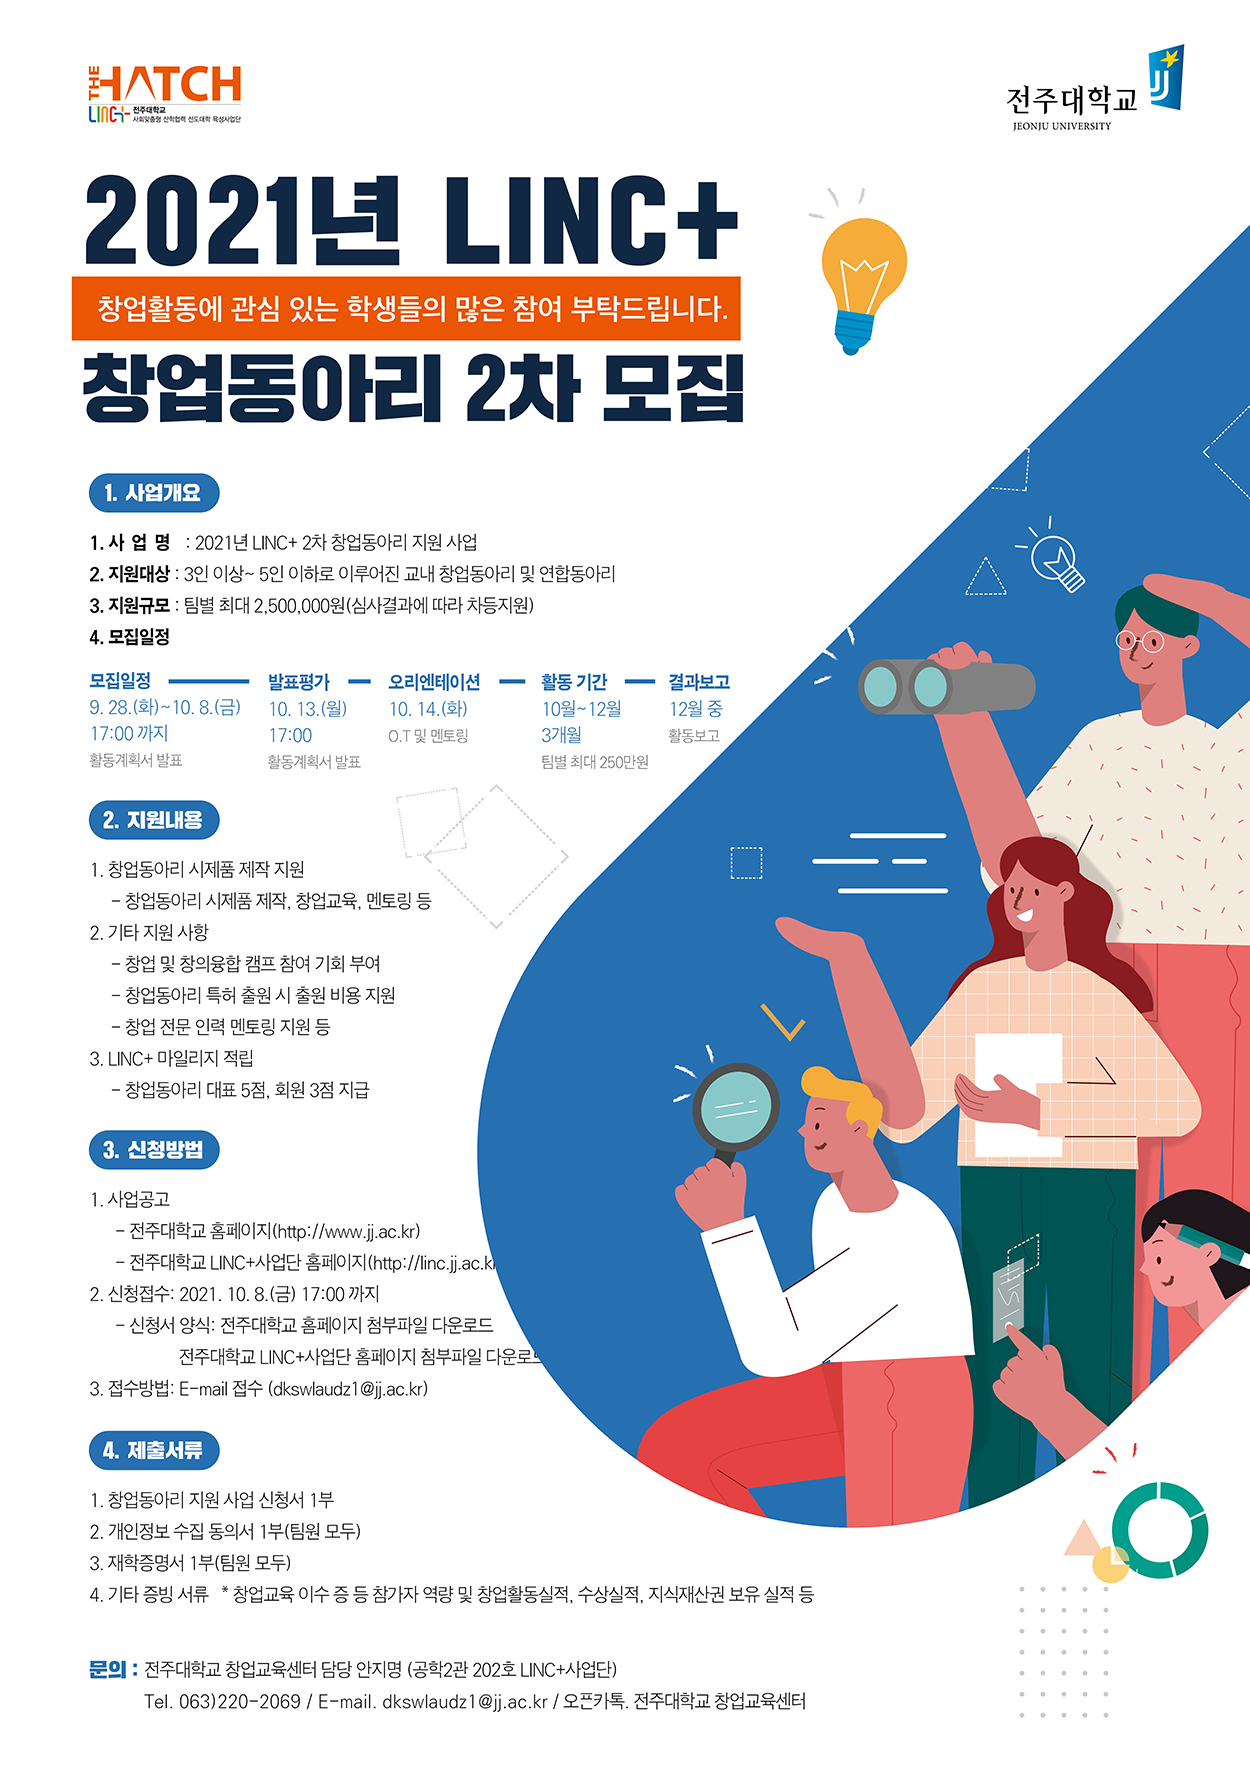  LINC+ 2차 창업동아리 모집 홍보 포스터.jpg